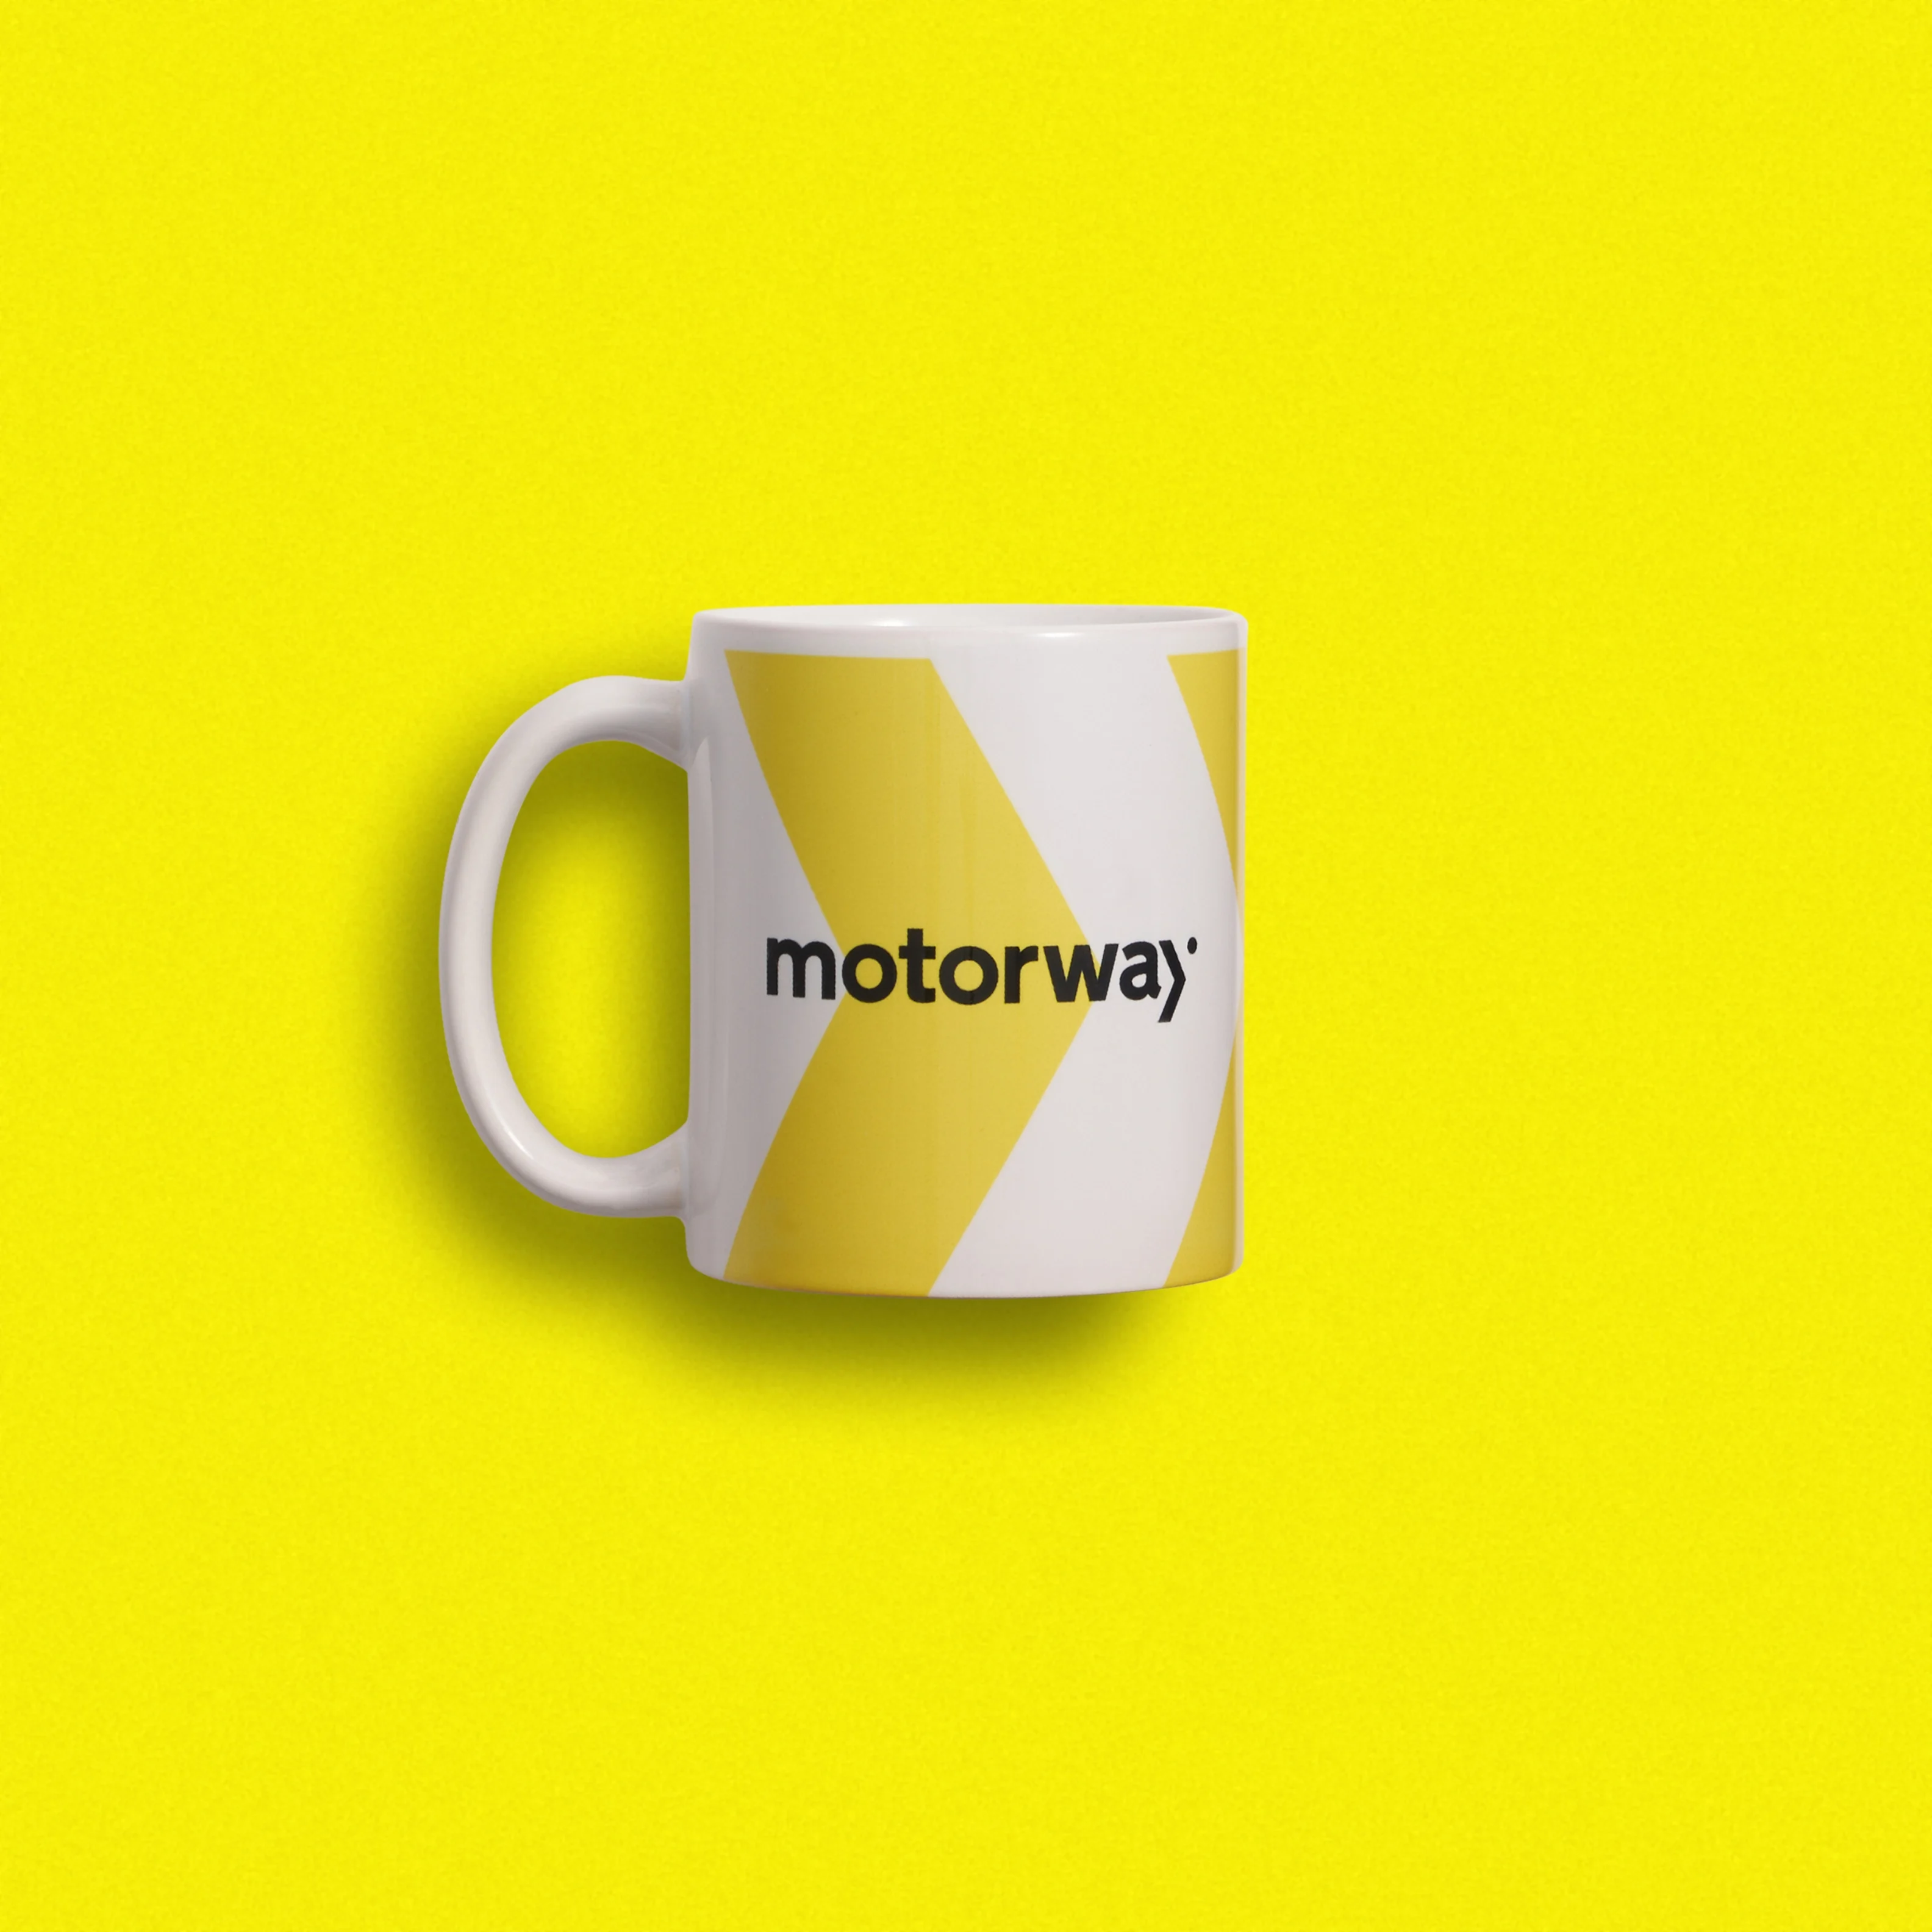 Motorway Go Swag Custom Branded Merchandise Welcome Pack Onboarding mug